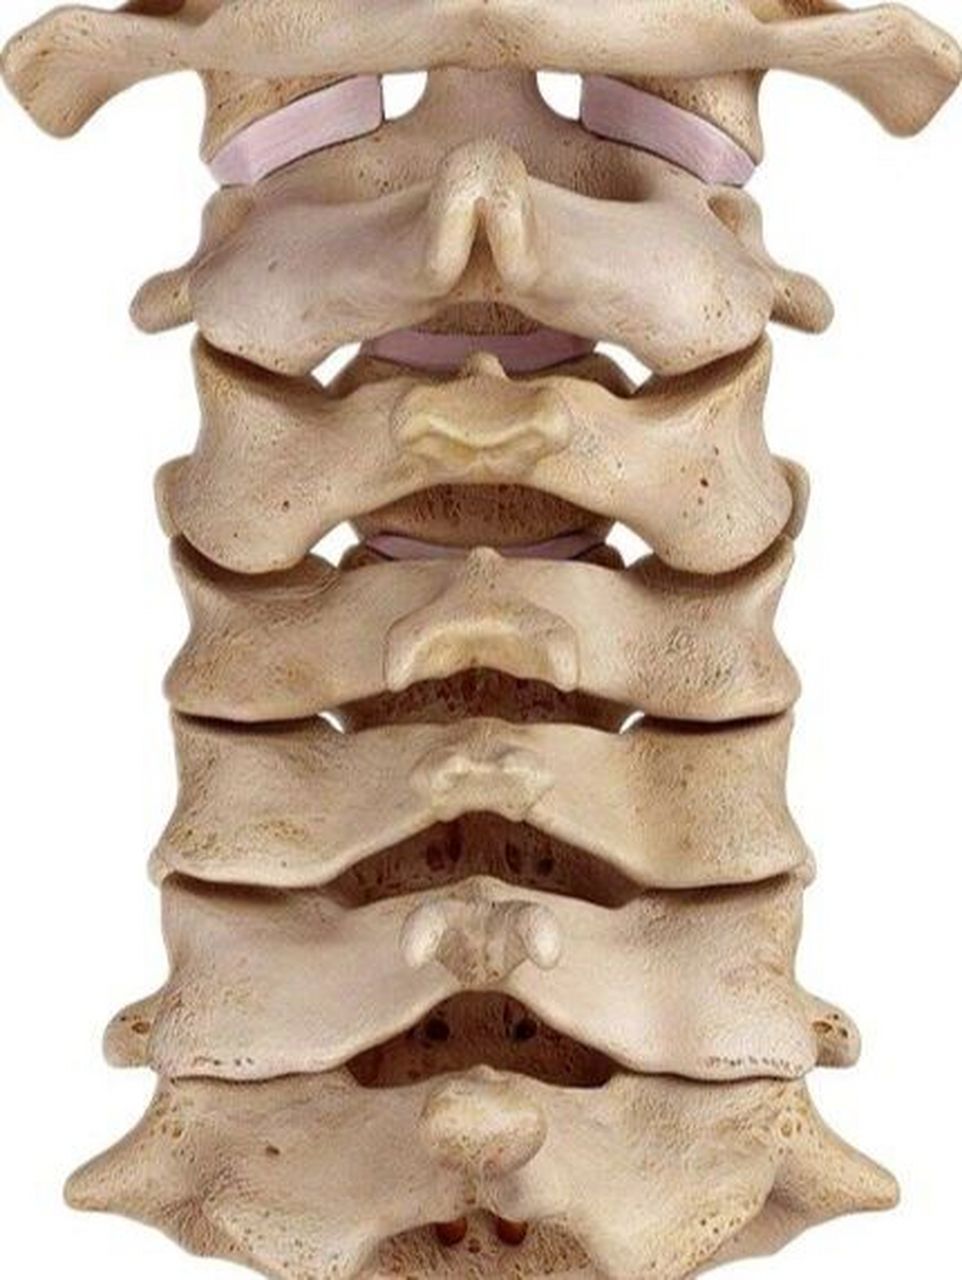 关节突关节解剖图图片